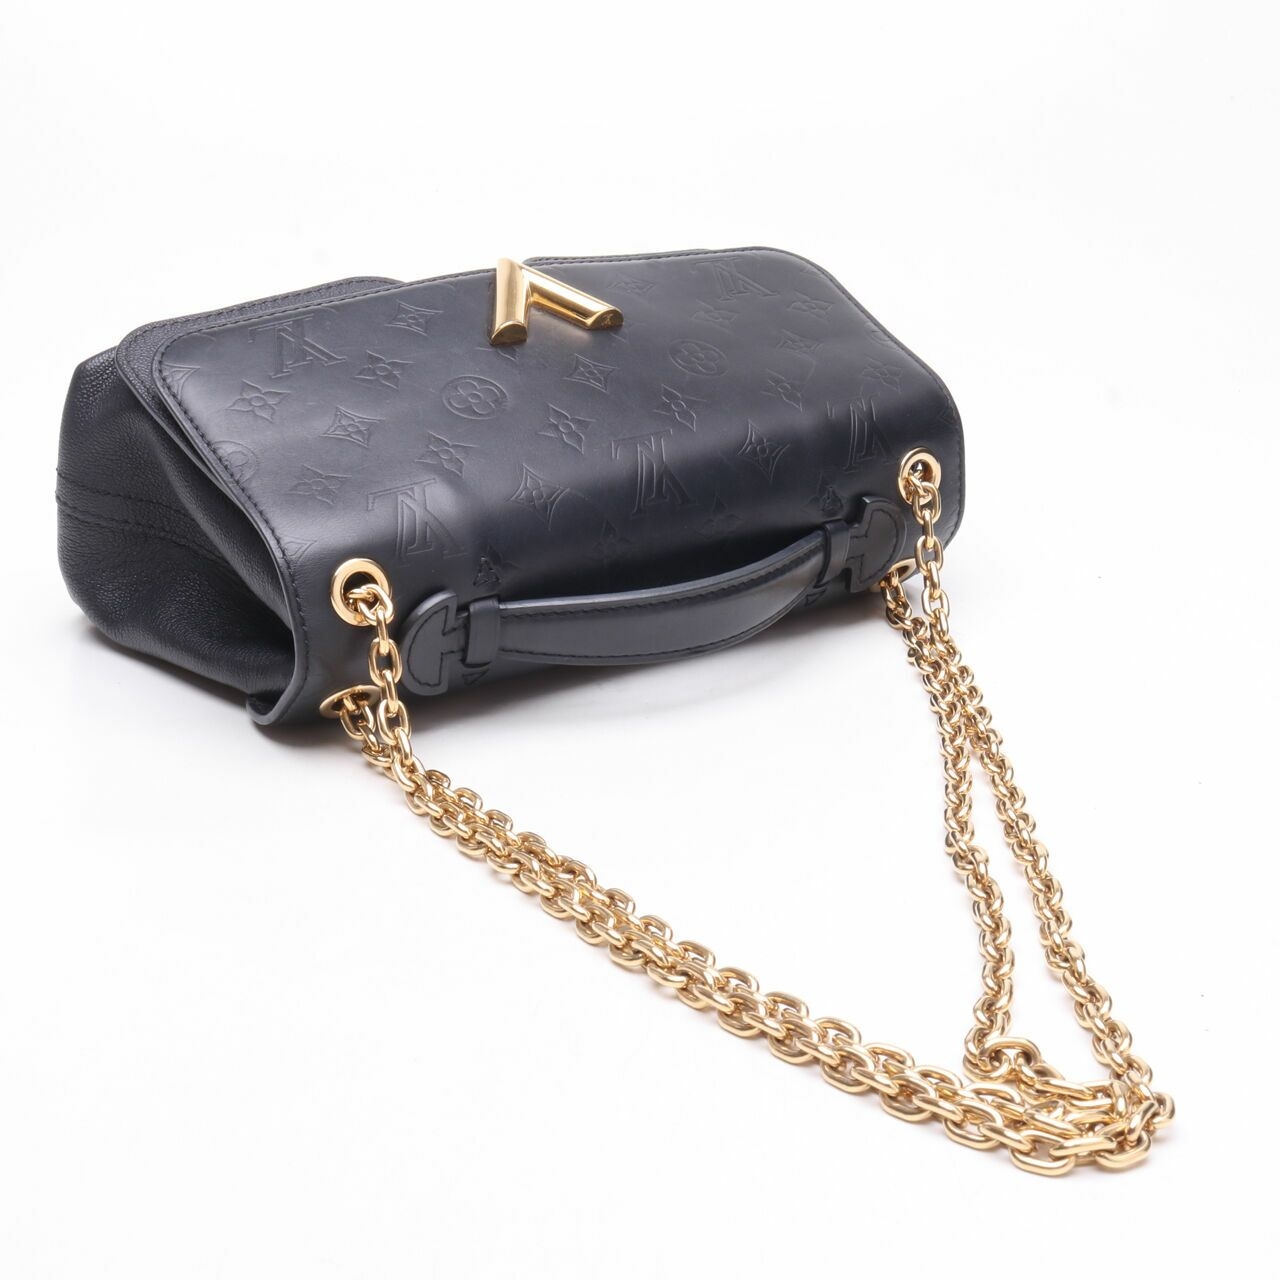 Louis Vuitton Very Chain Bag Noir Black 2017 Satchel